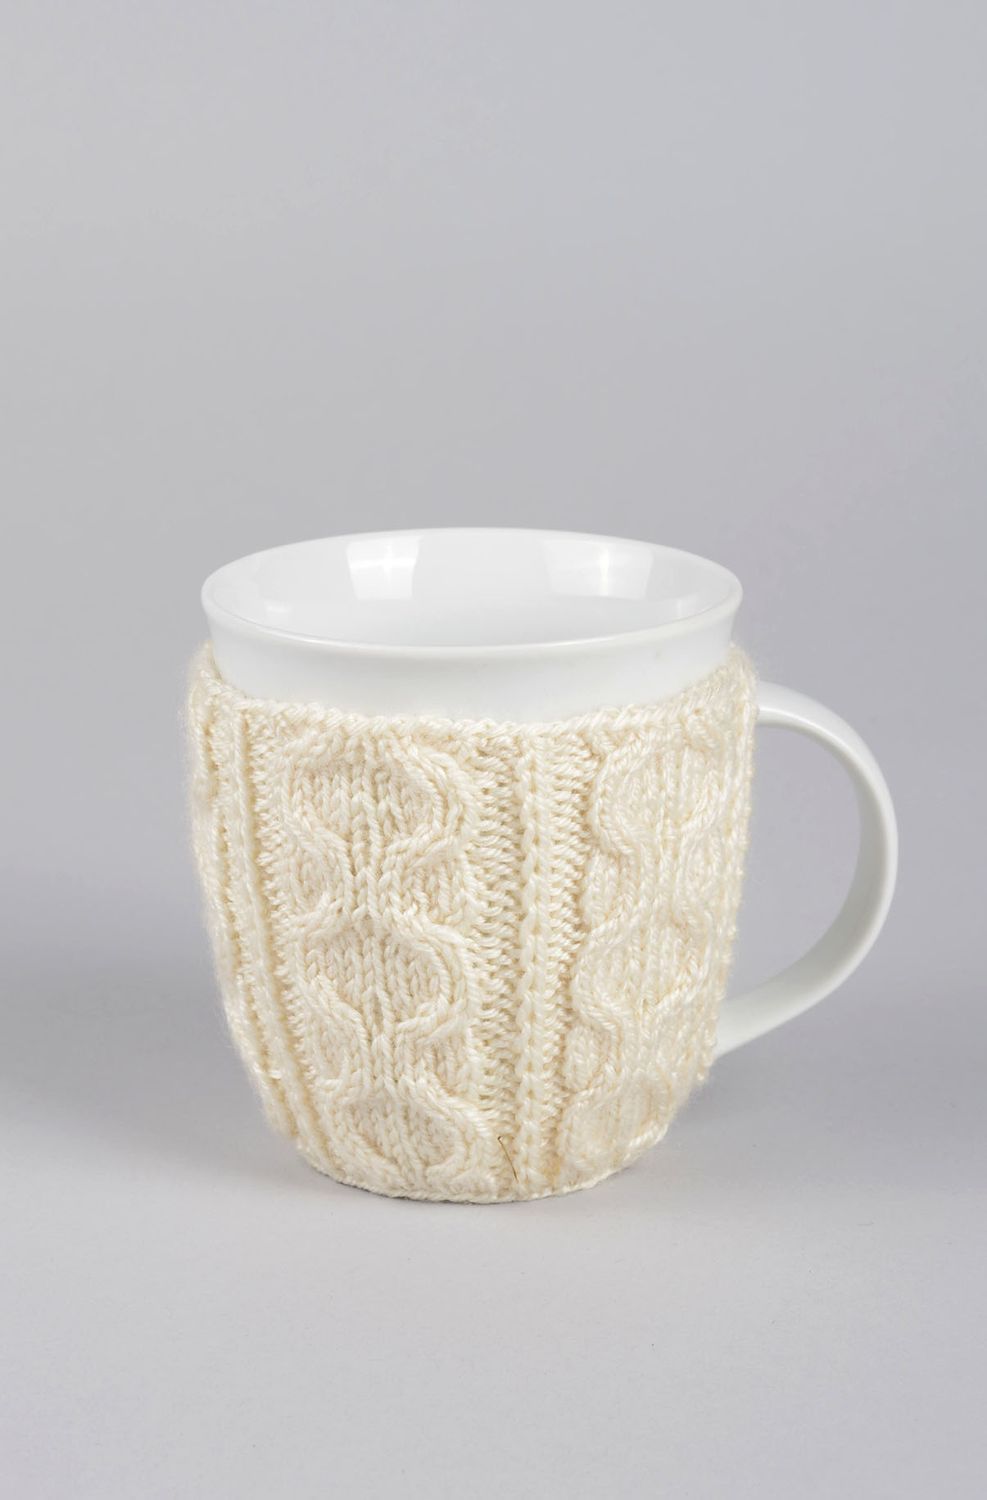 Чайная чашка ручной работы кружка в вязаном чехле белая глиняная чашка фото 1